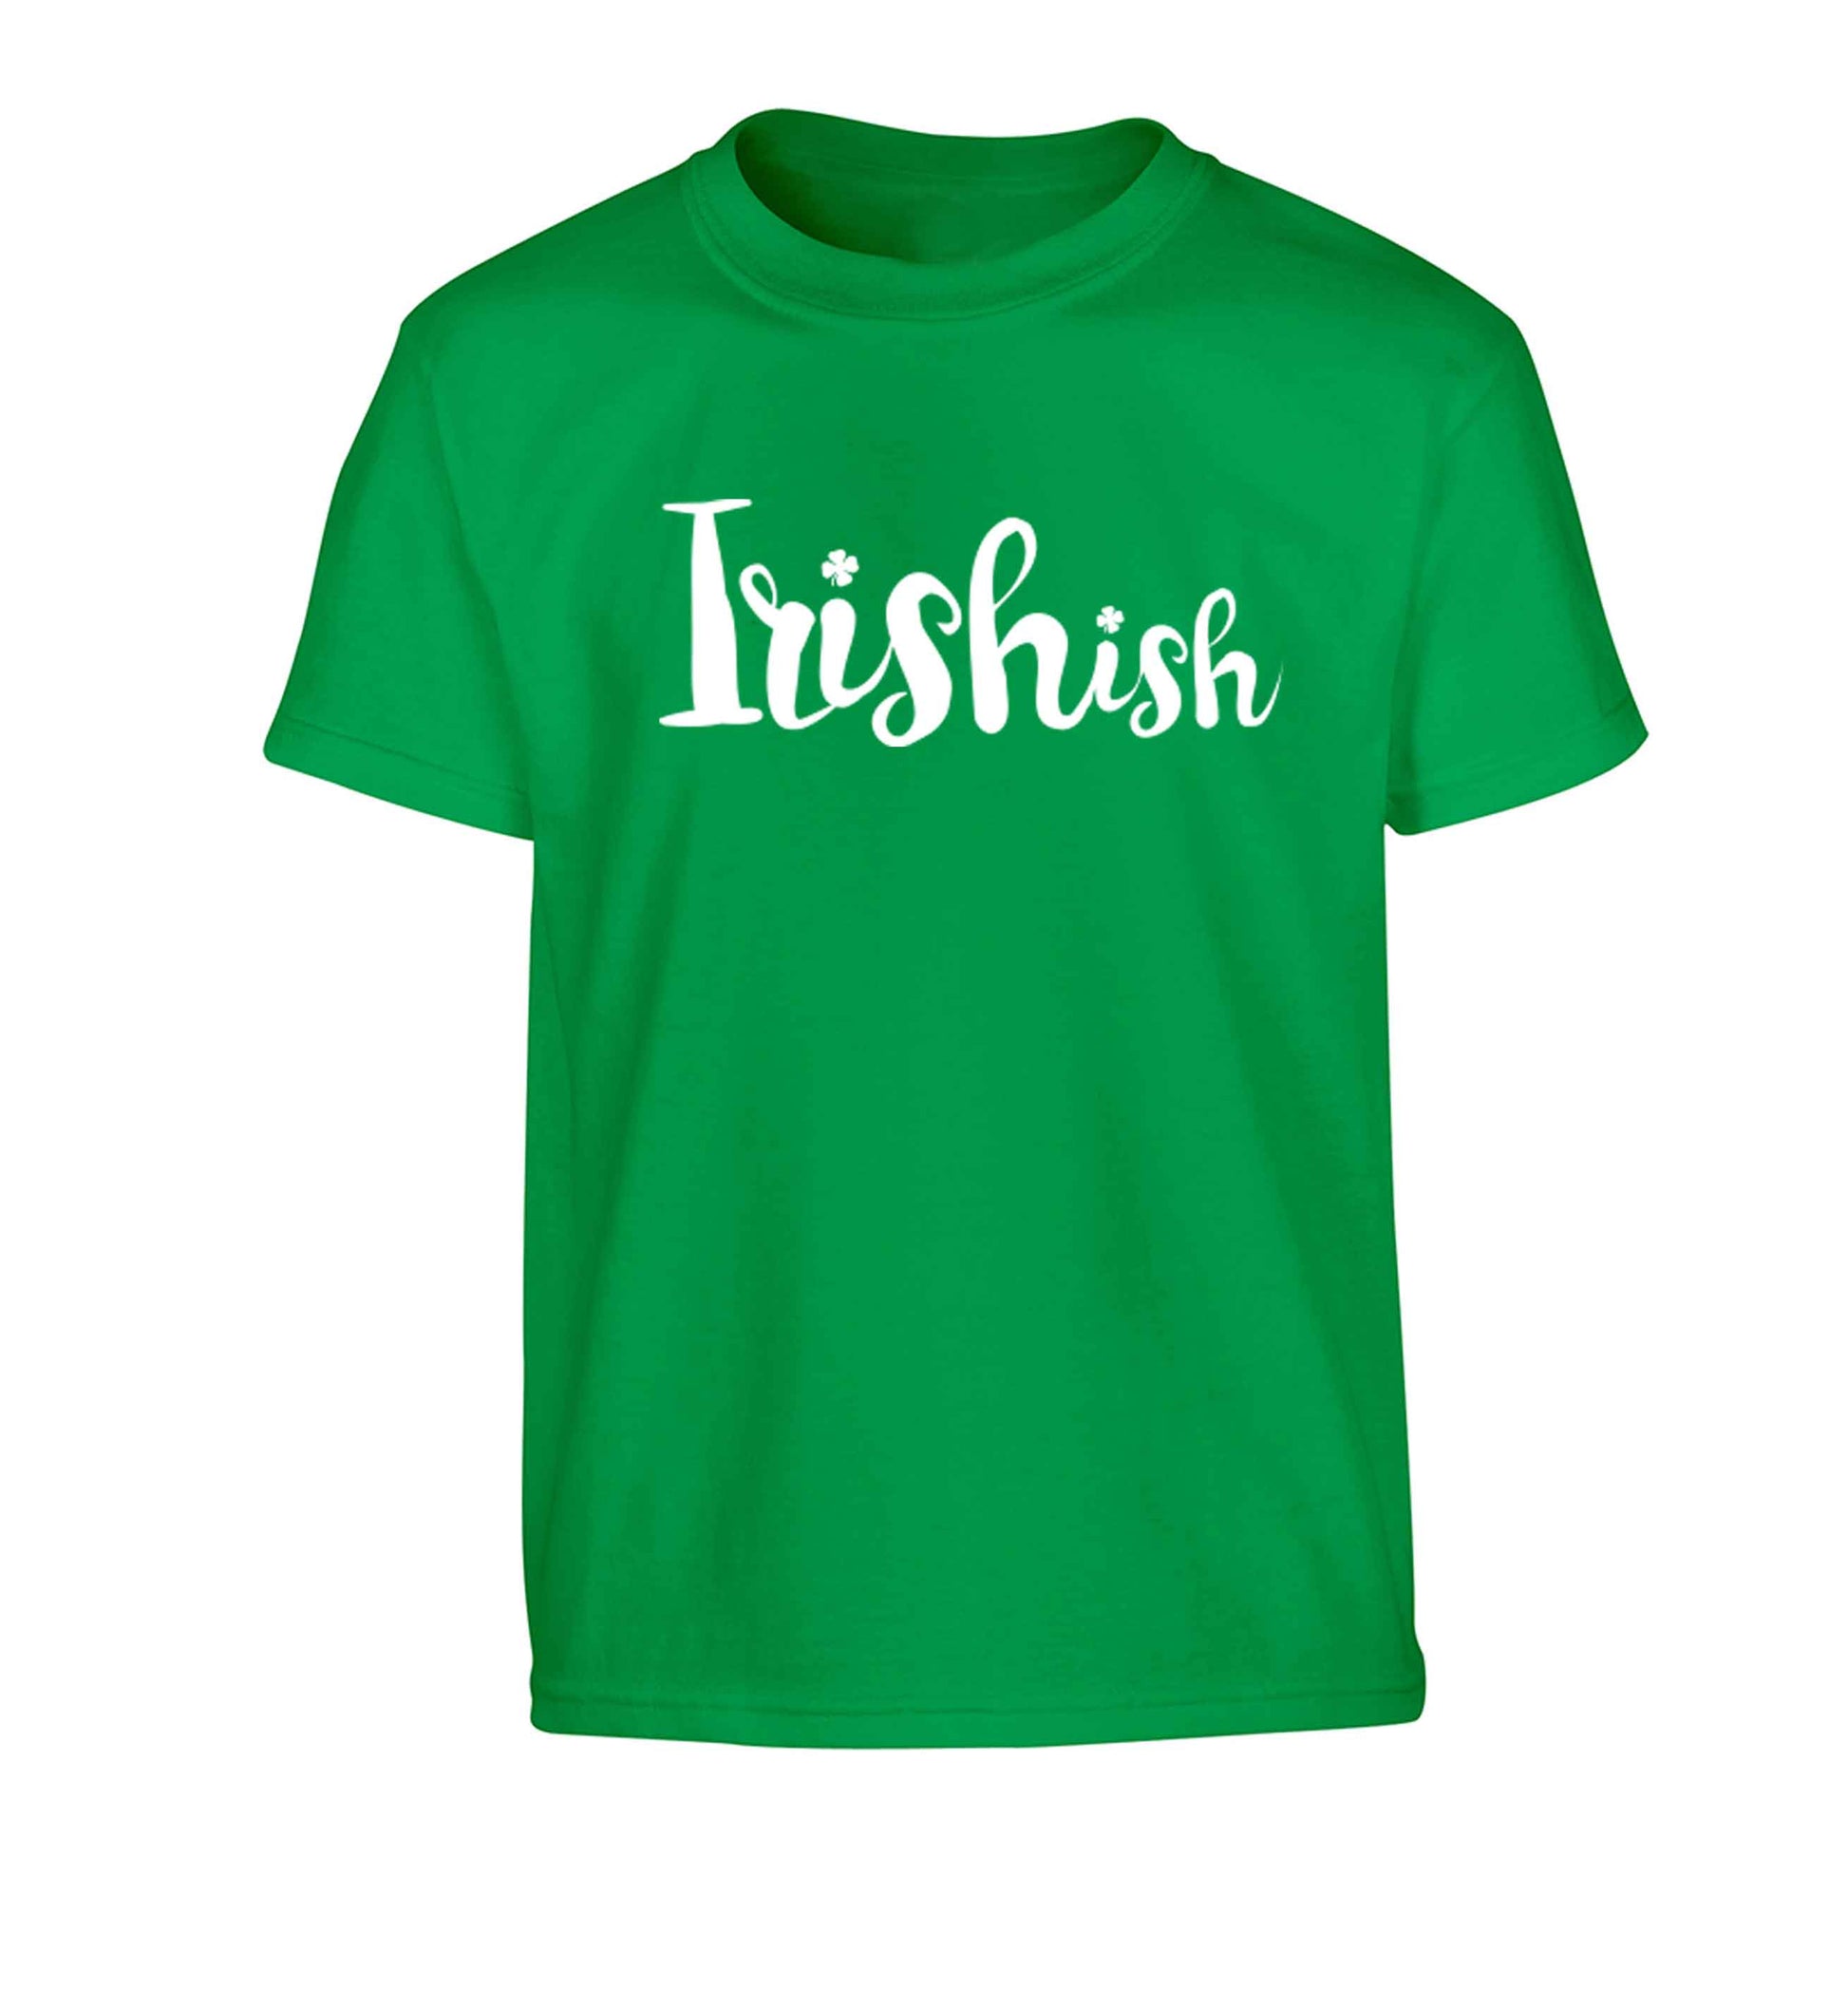 Irishish Children's green Tshirt 12-13 Years